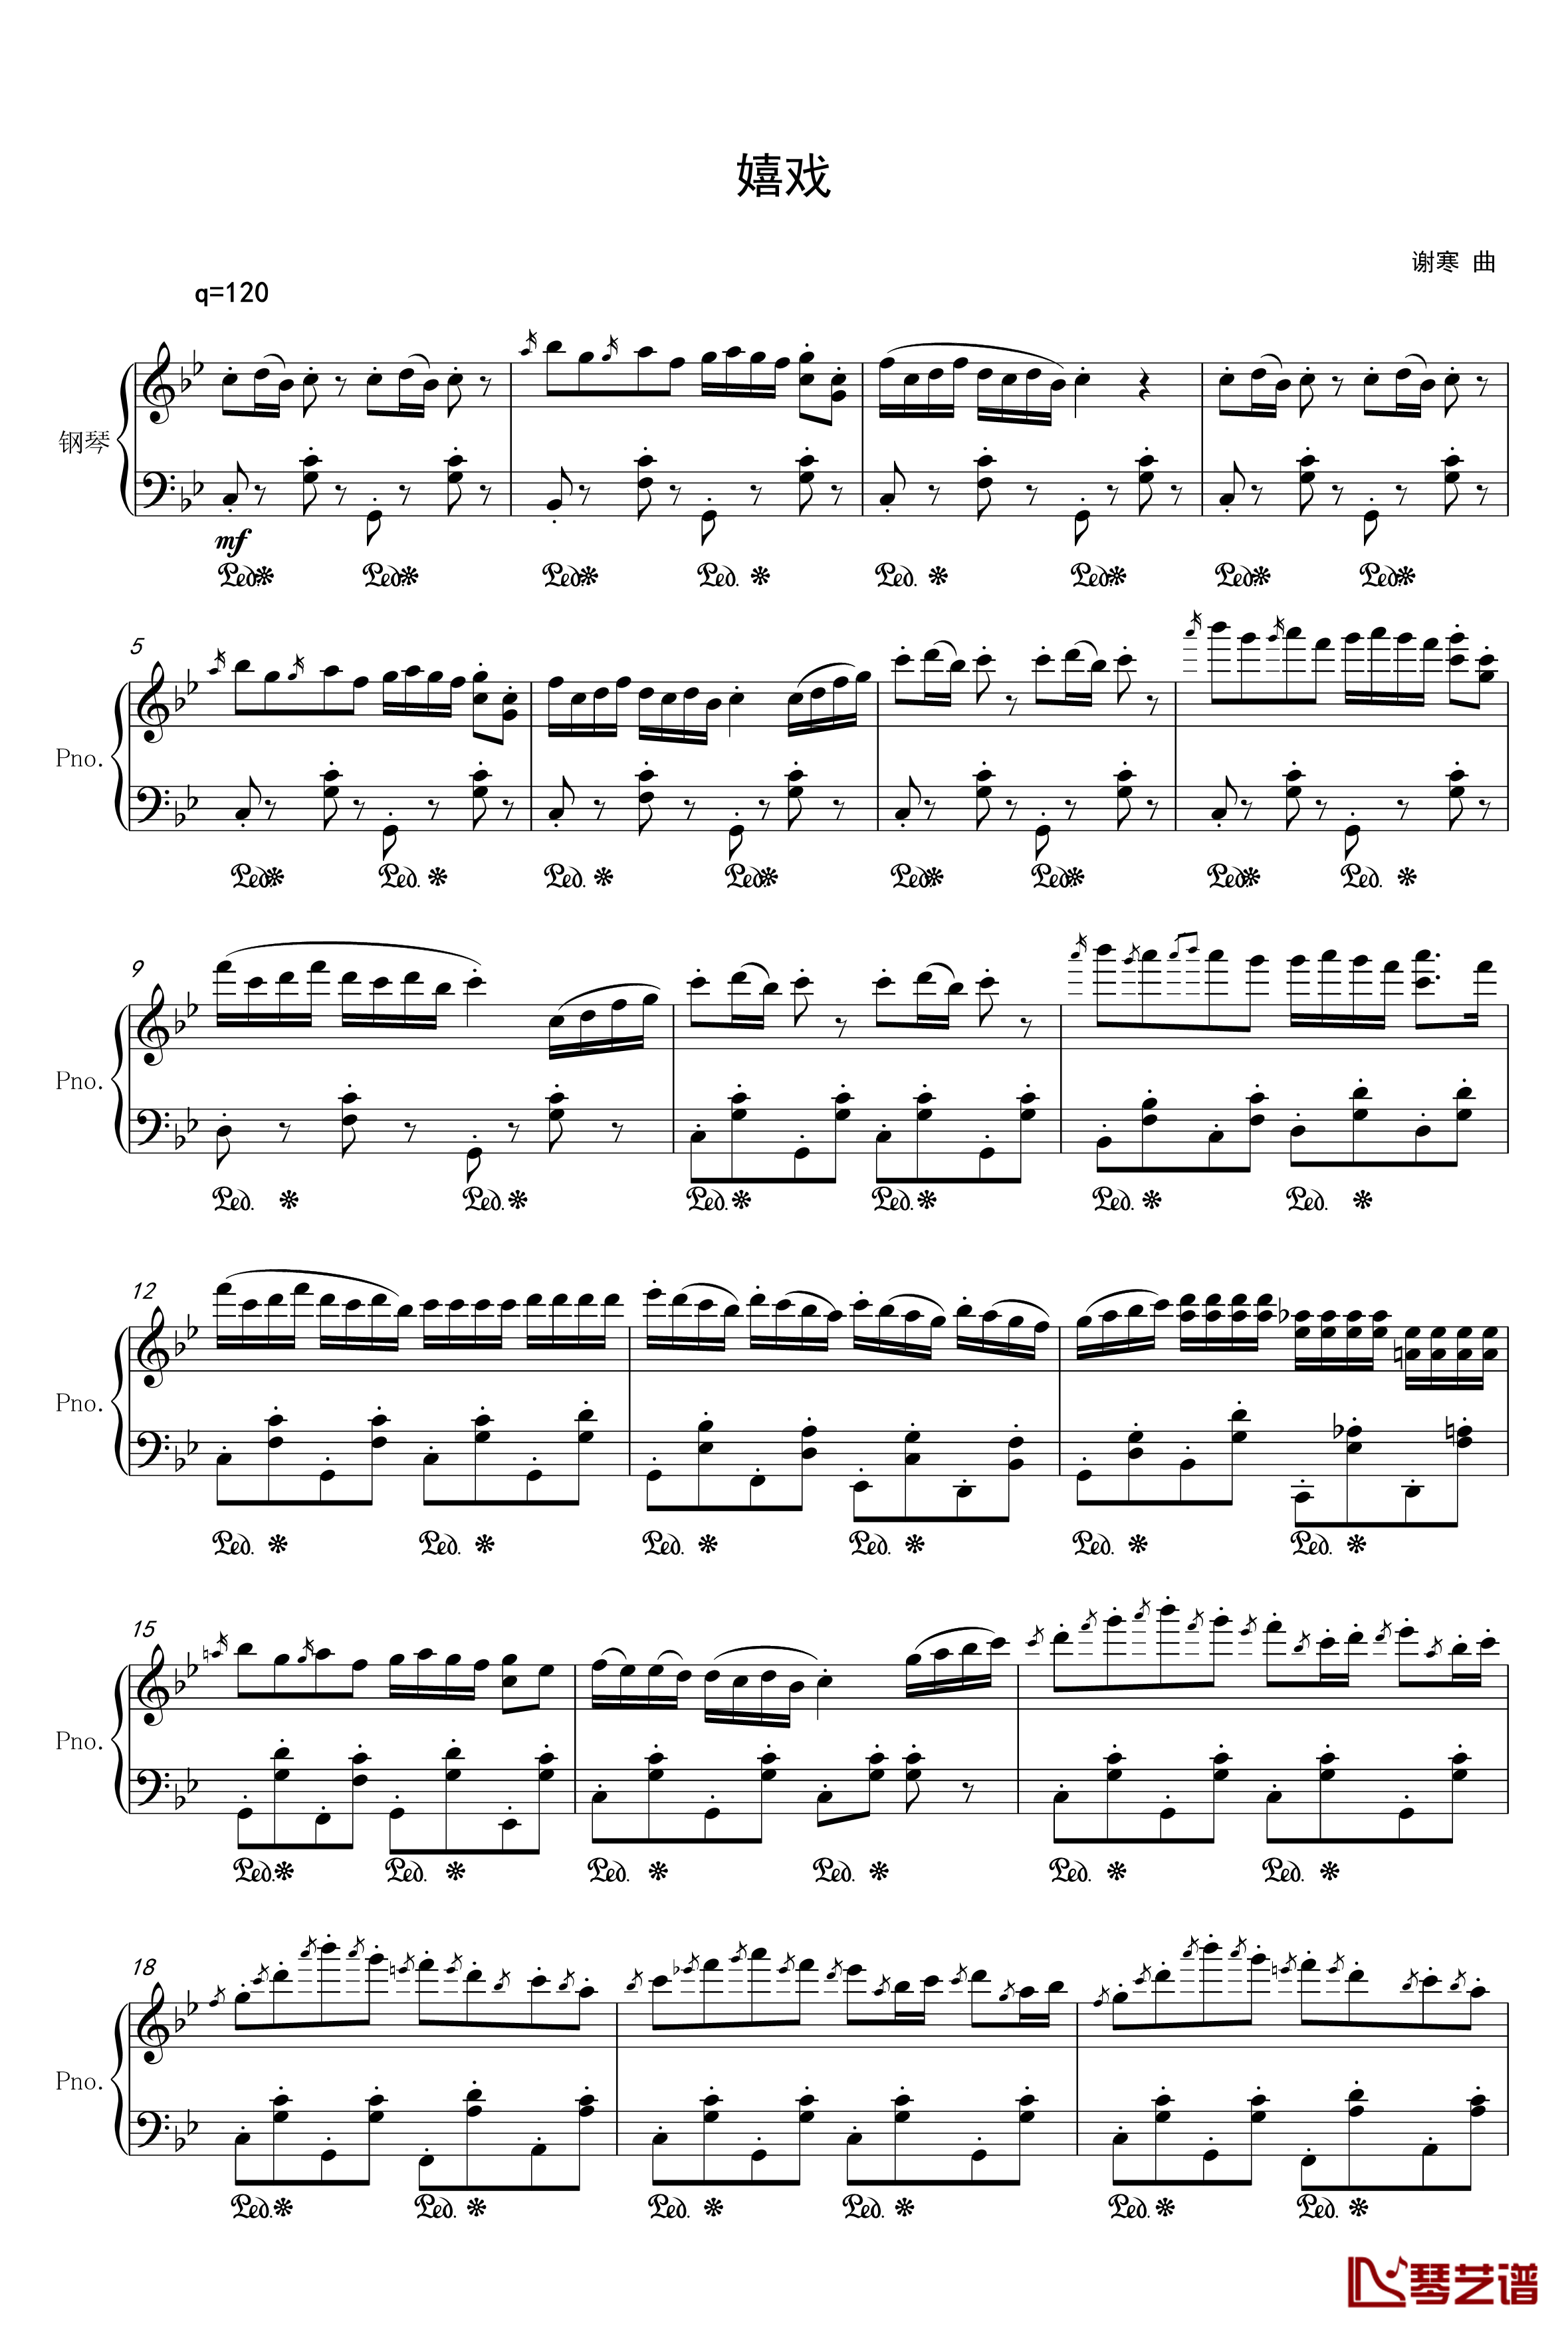 嬉戏钢琴谱-孤寒1